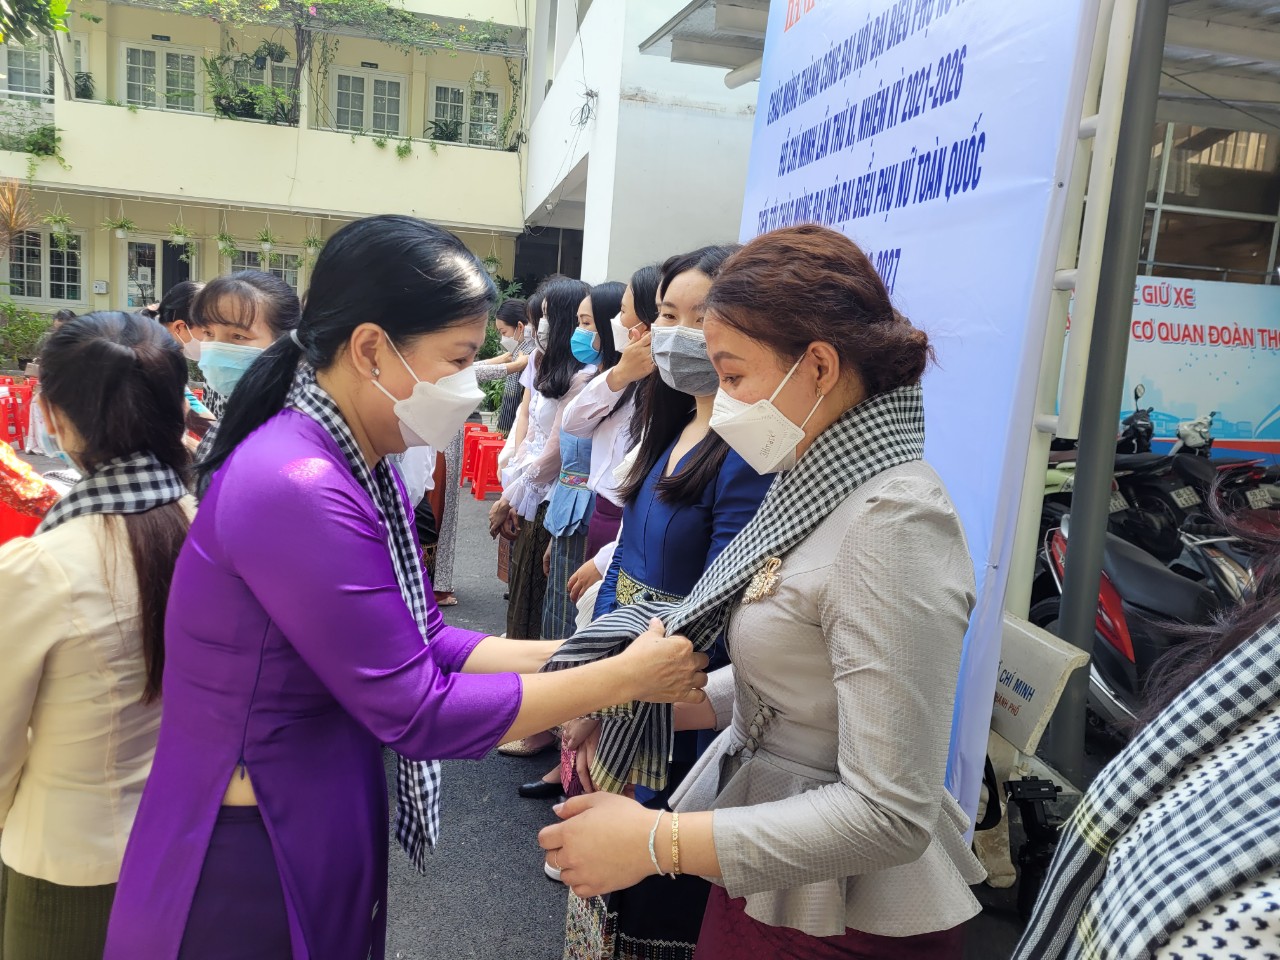 Bà Trần Thị Tuyết Hạnh - Chủ tịch Hội LHPN Q.5 trao tặng khăn rằng cho các nữ du học sinh Lào với mong muốn thắt chặt tình đoàn kết, hữu nghị giữa hai nước